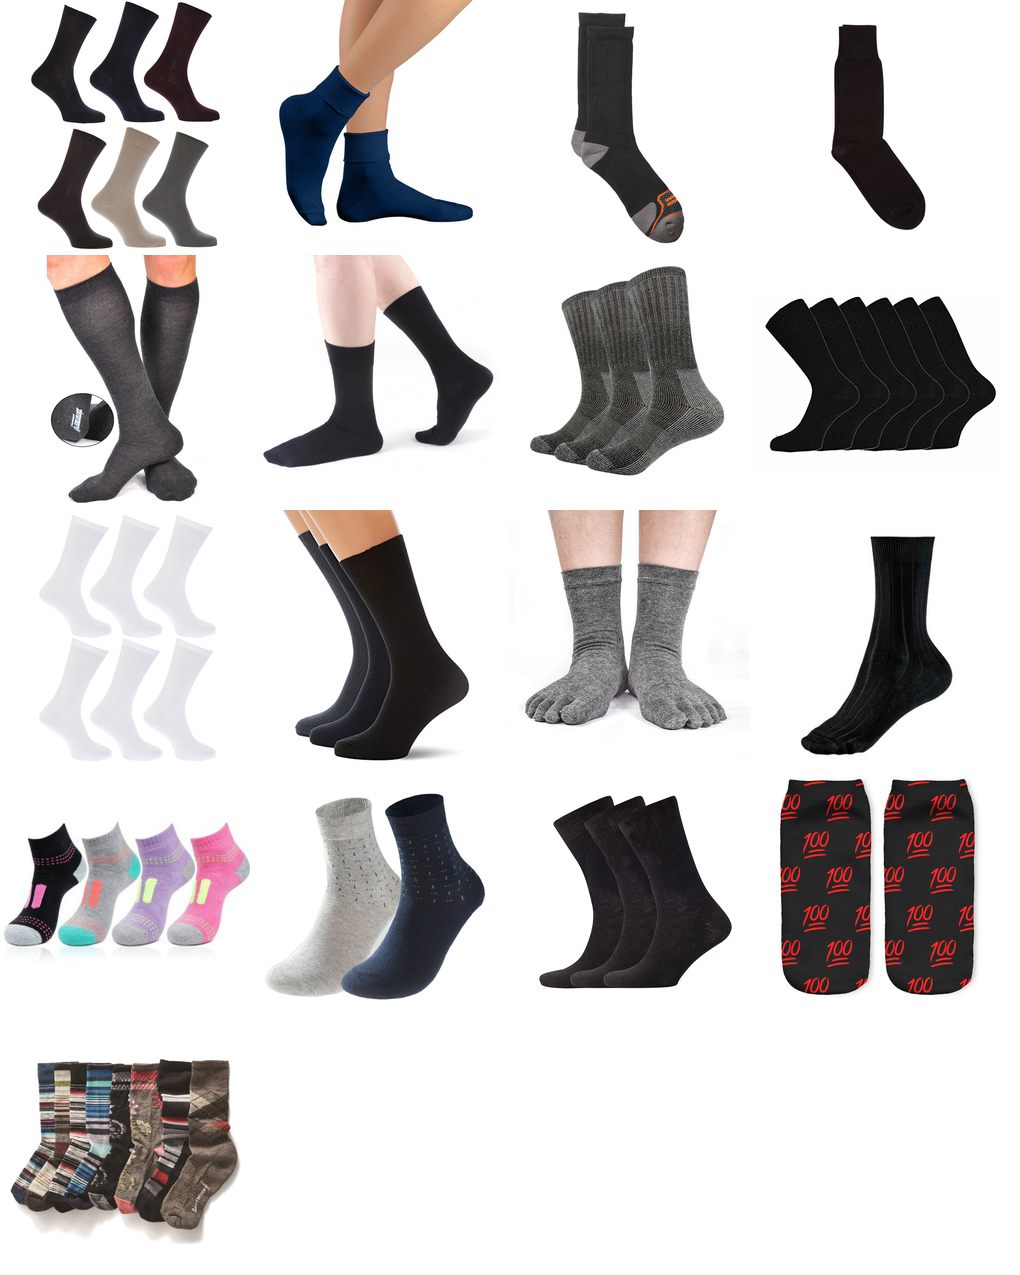 100 percent cotton socks for men